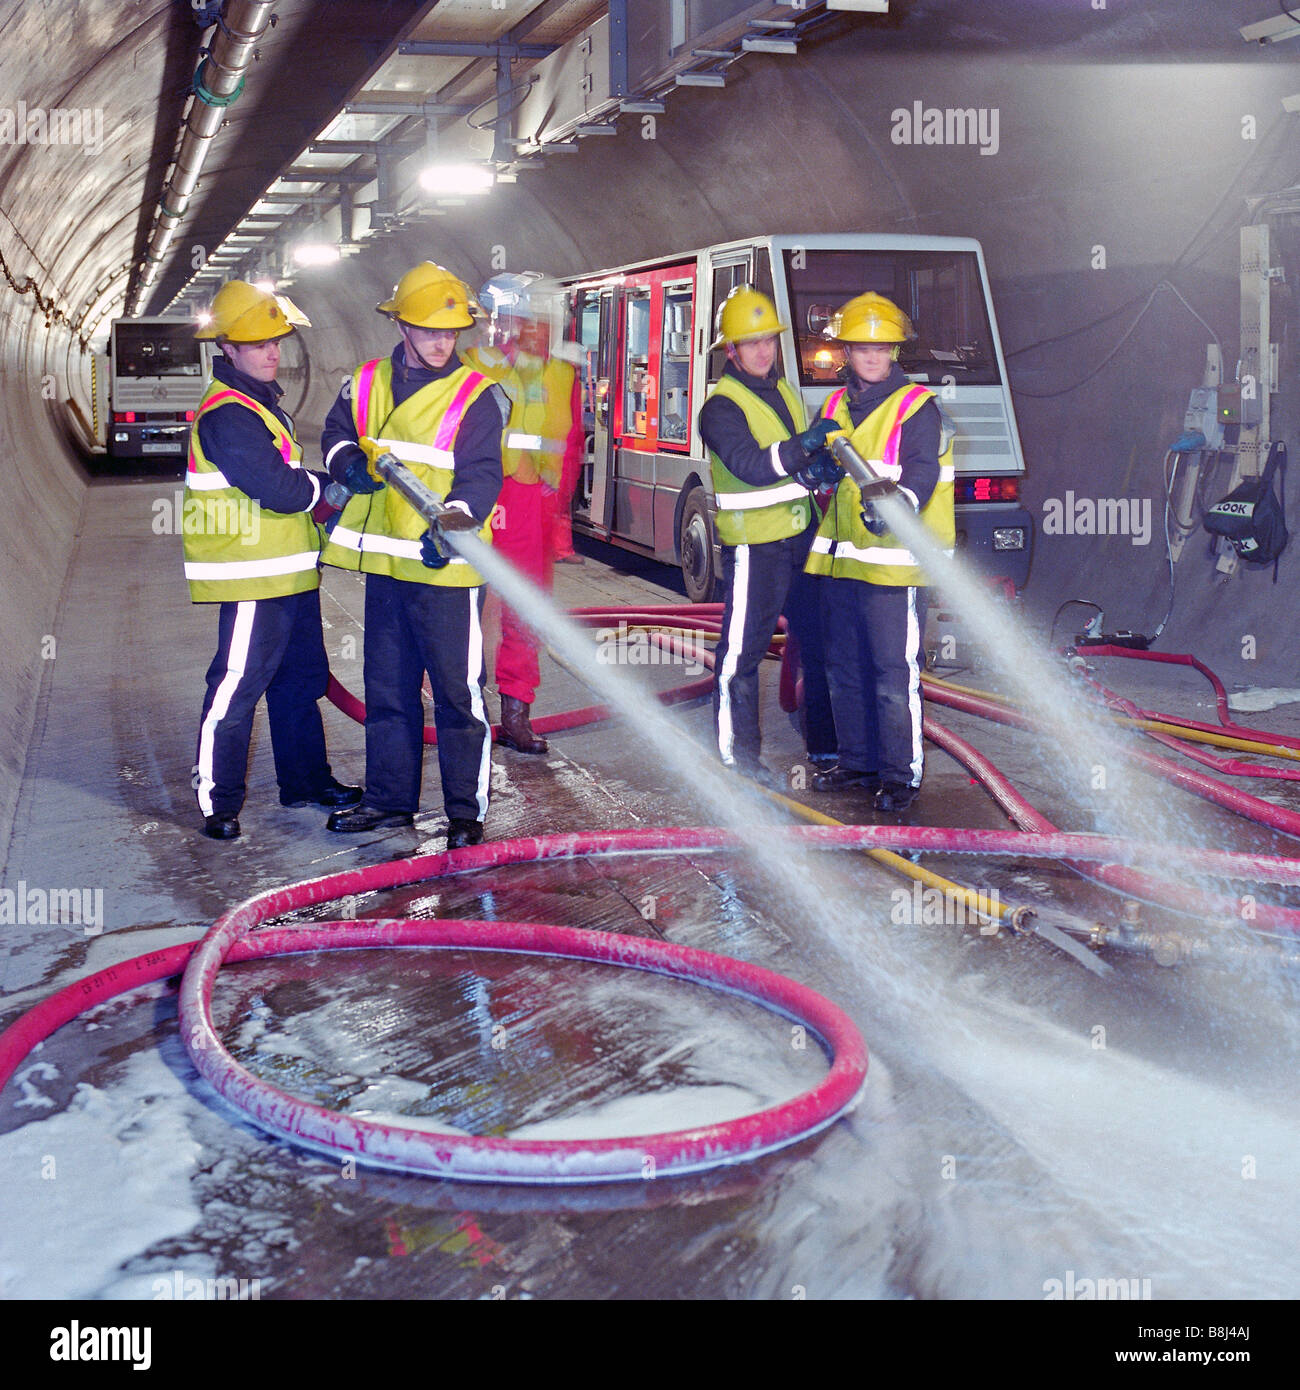 Feuerwehr Feuer Unterdrückung Prüfgeräte in der Kanaltunnel Servicetunnel - Emulgator in Wasser produziert Schaum. Stockfoto